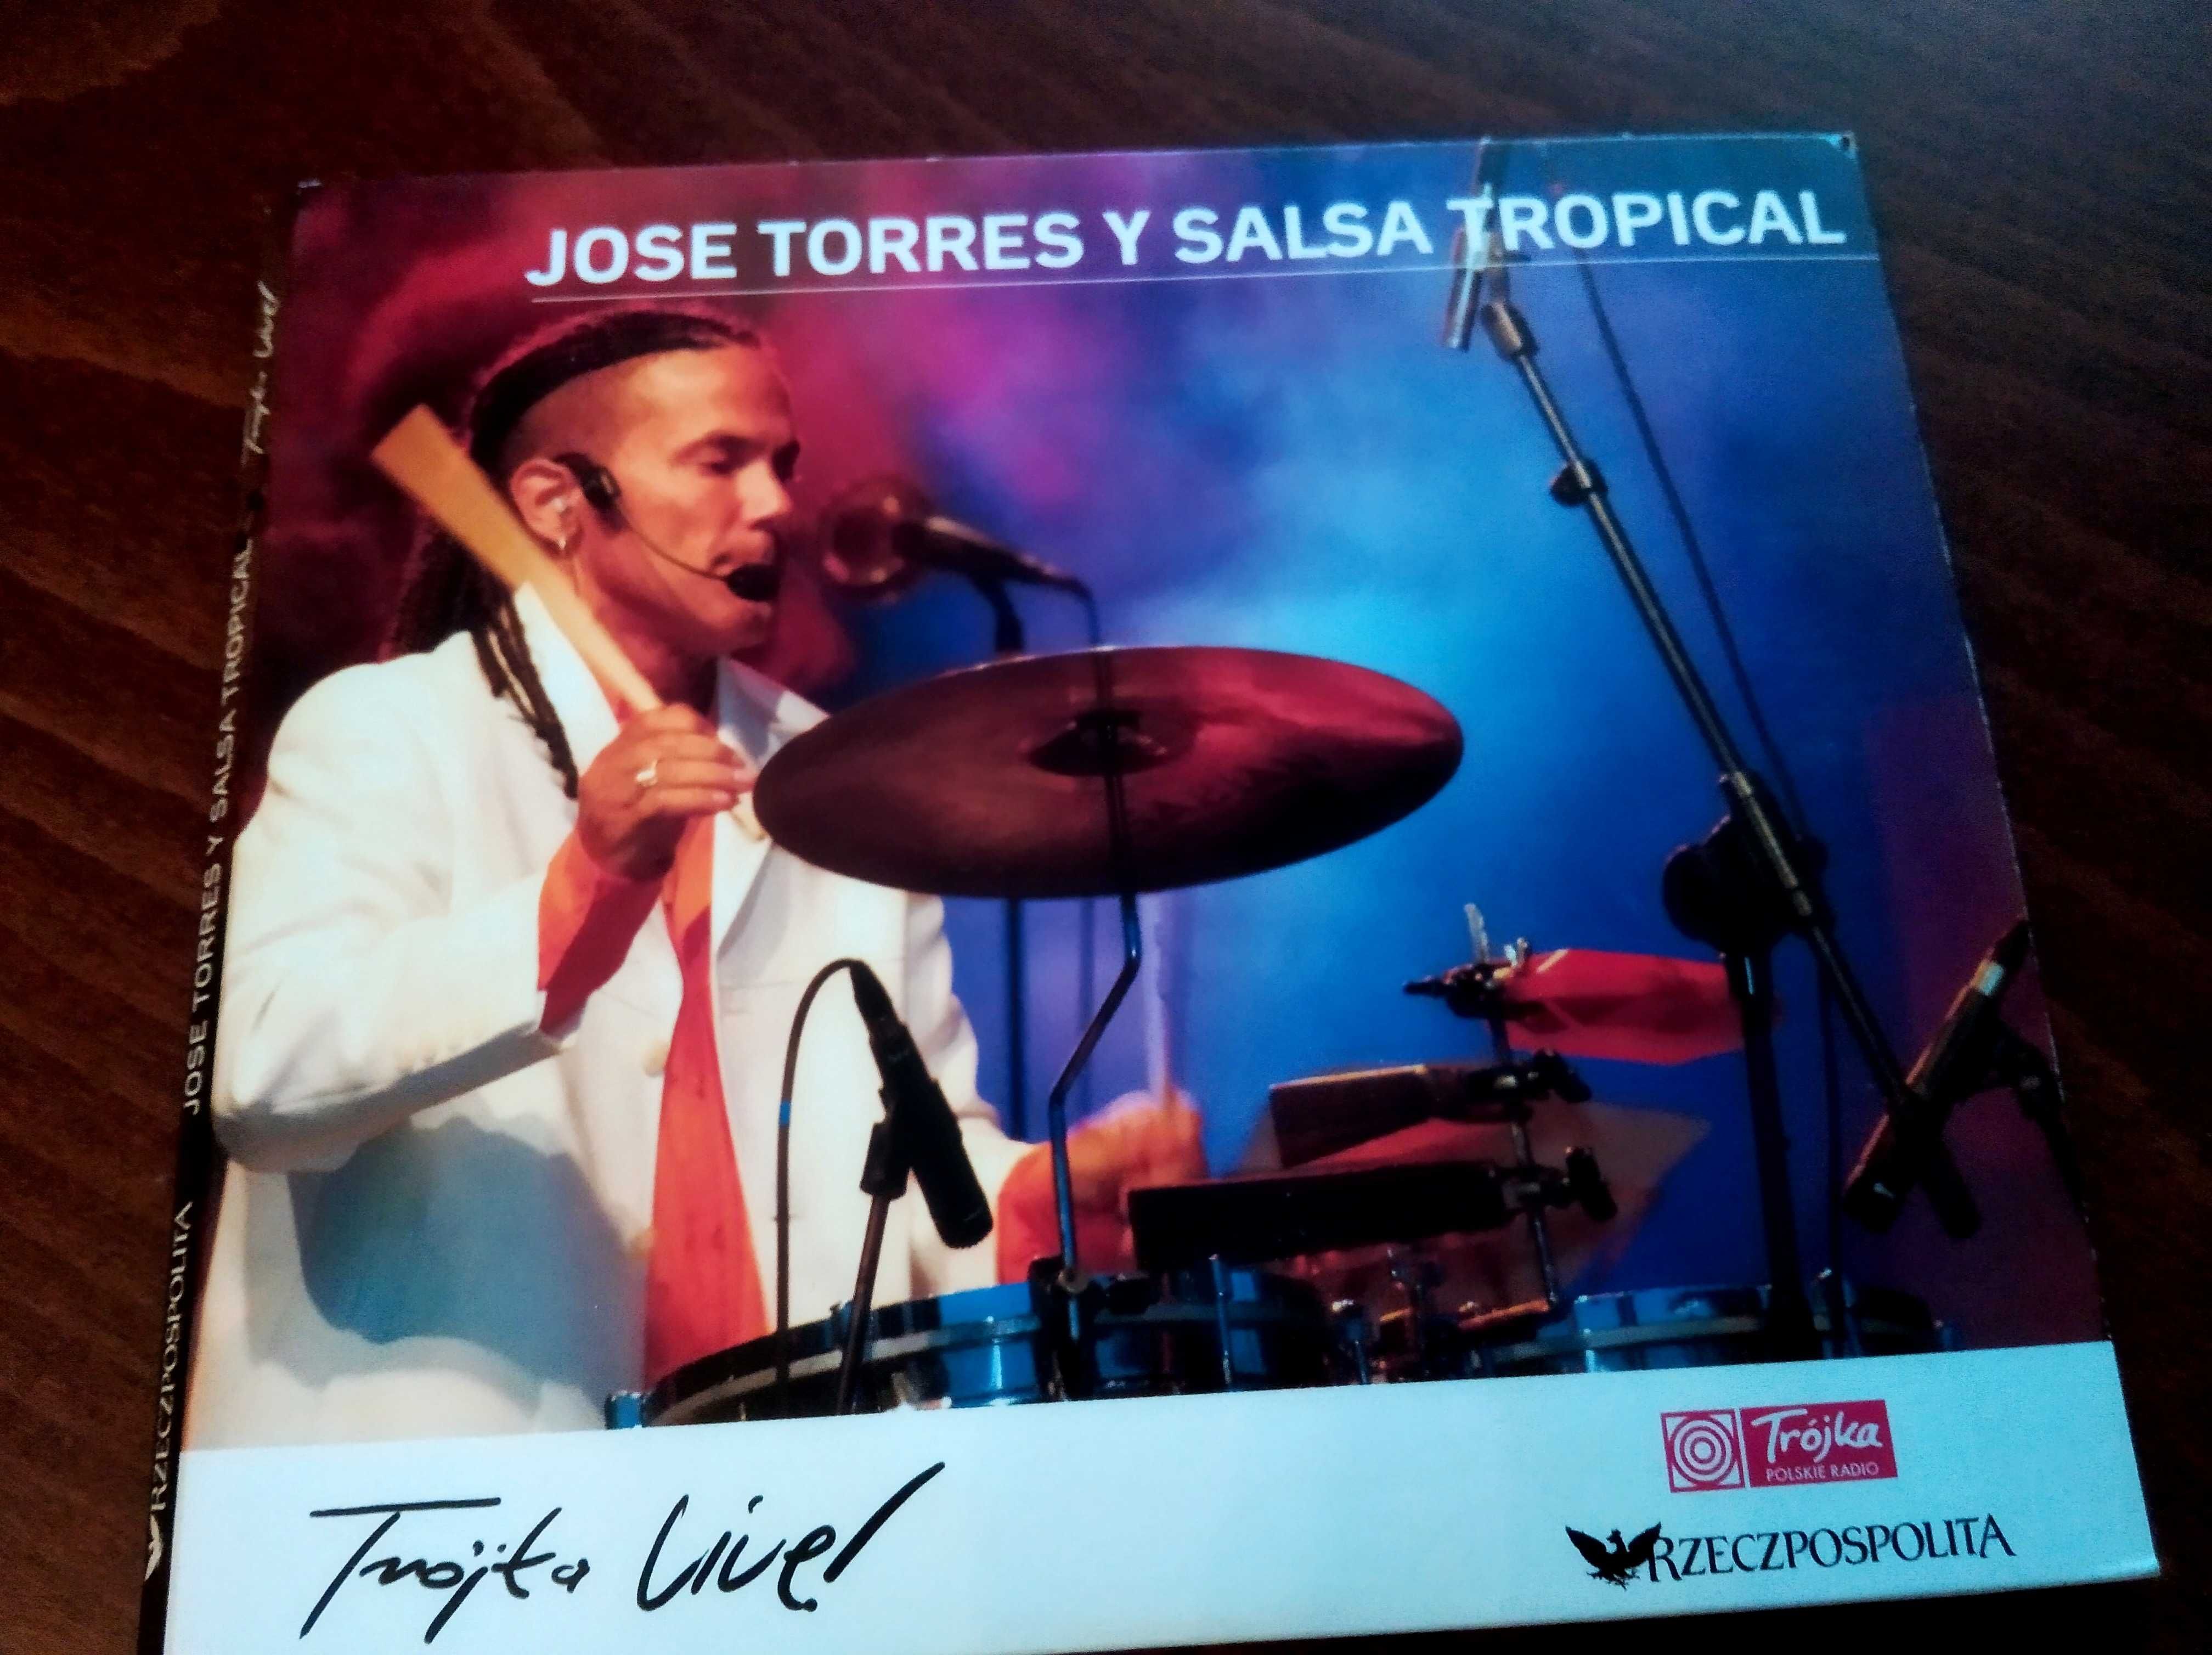 Jose Torres salsa  cd x 2szt